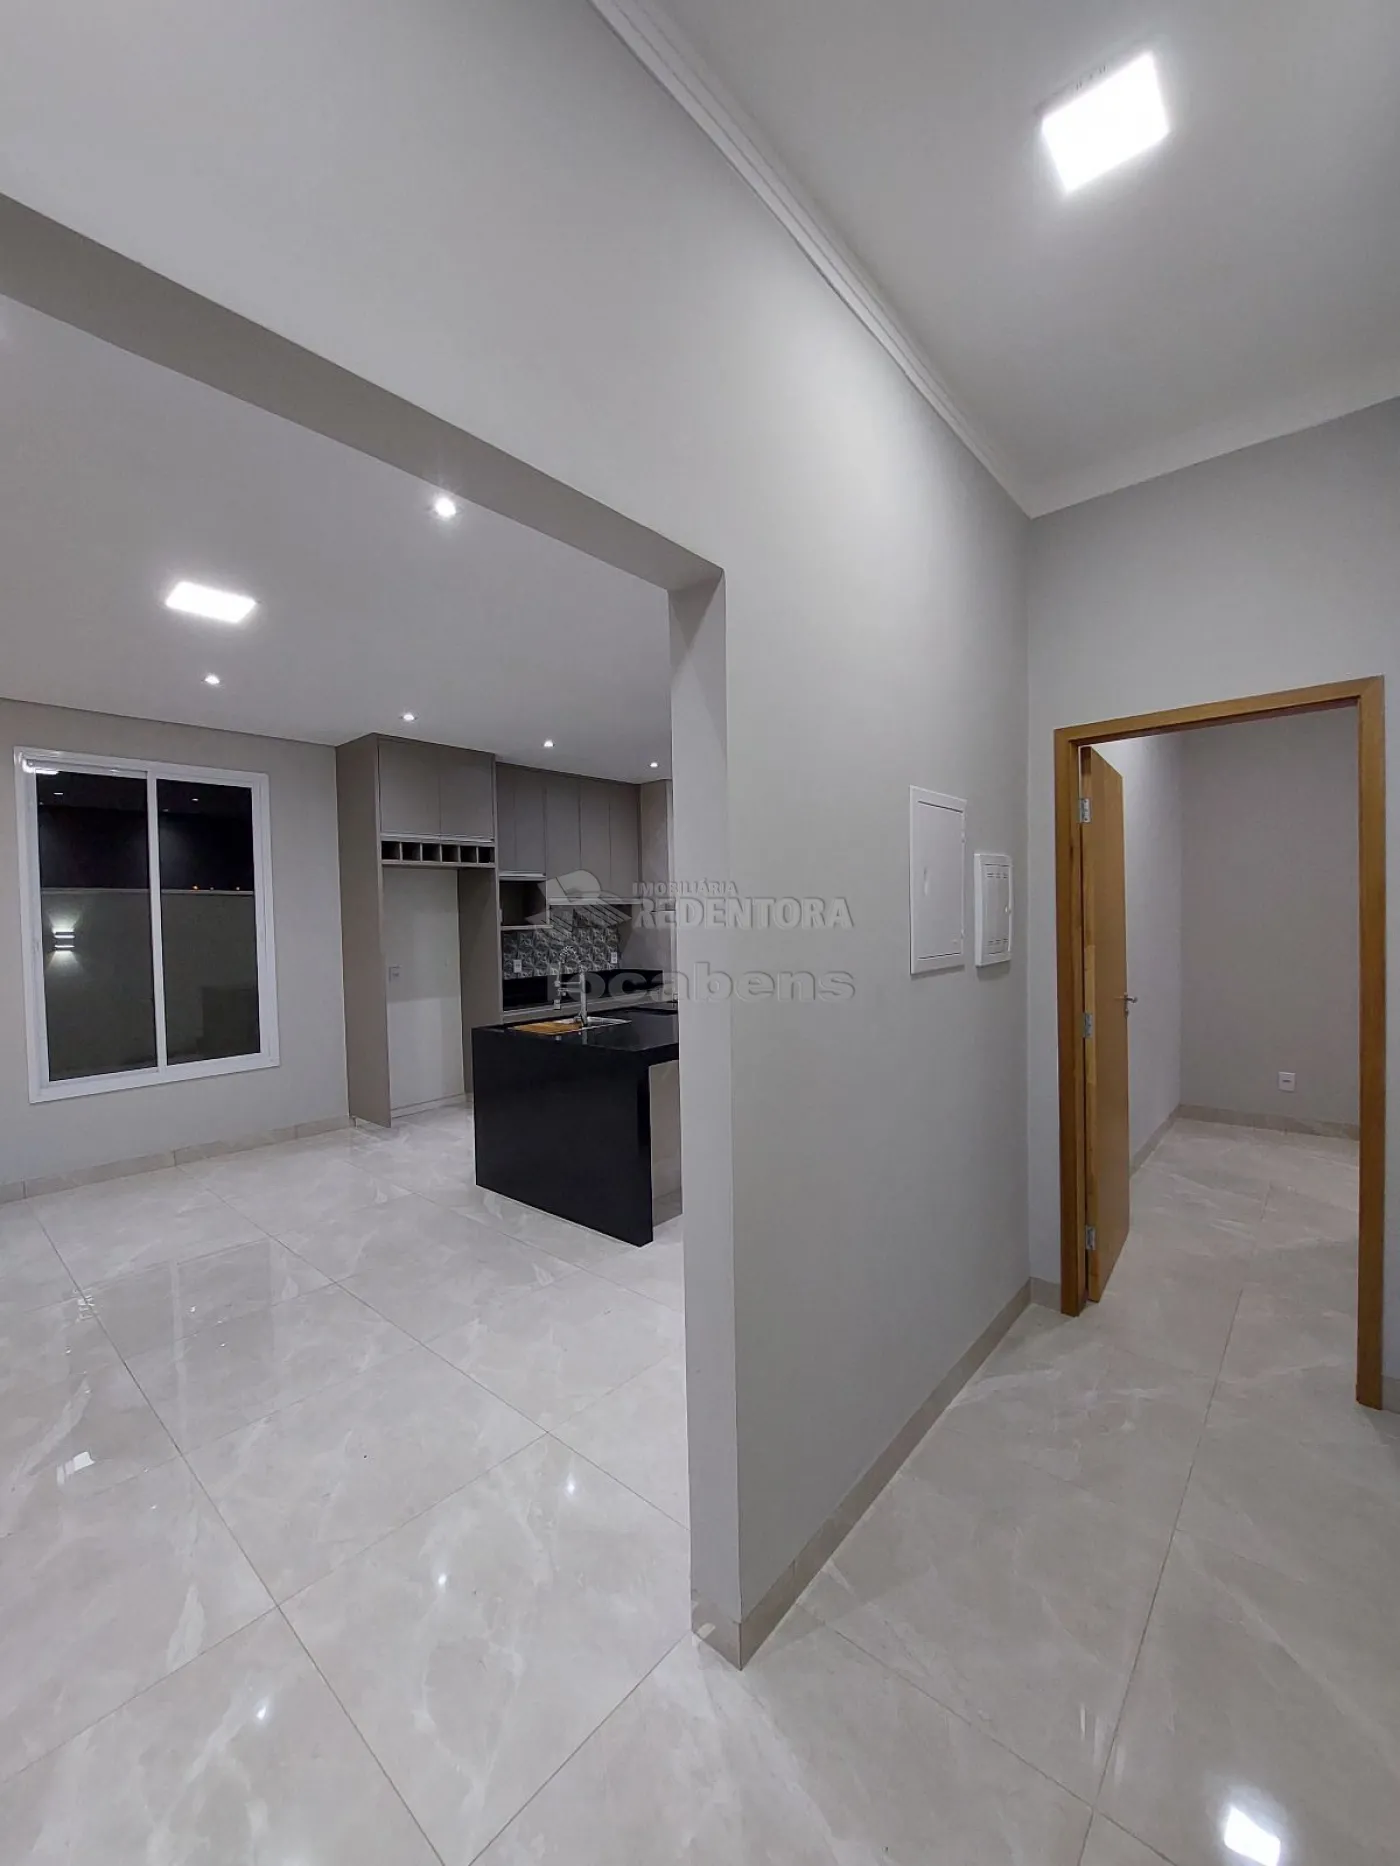 Comprar Casa / Condomínio em Mirassol apenas R$ 980.000,00 - Foto 11